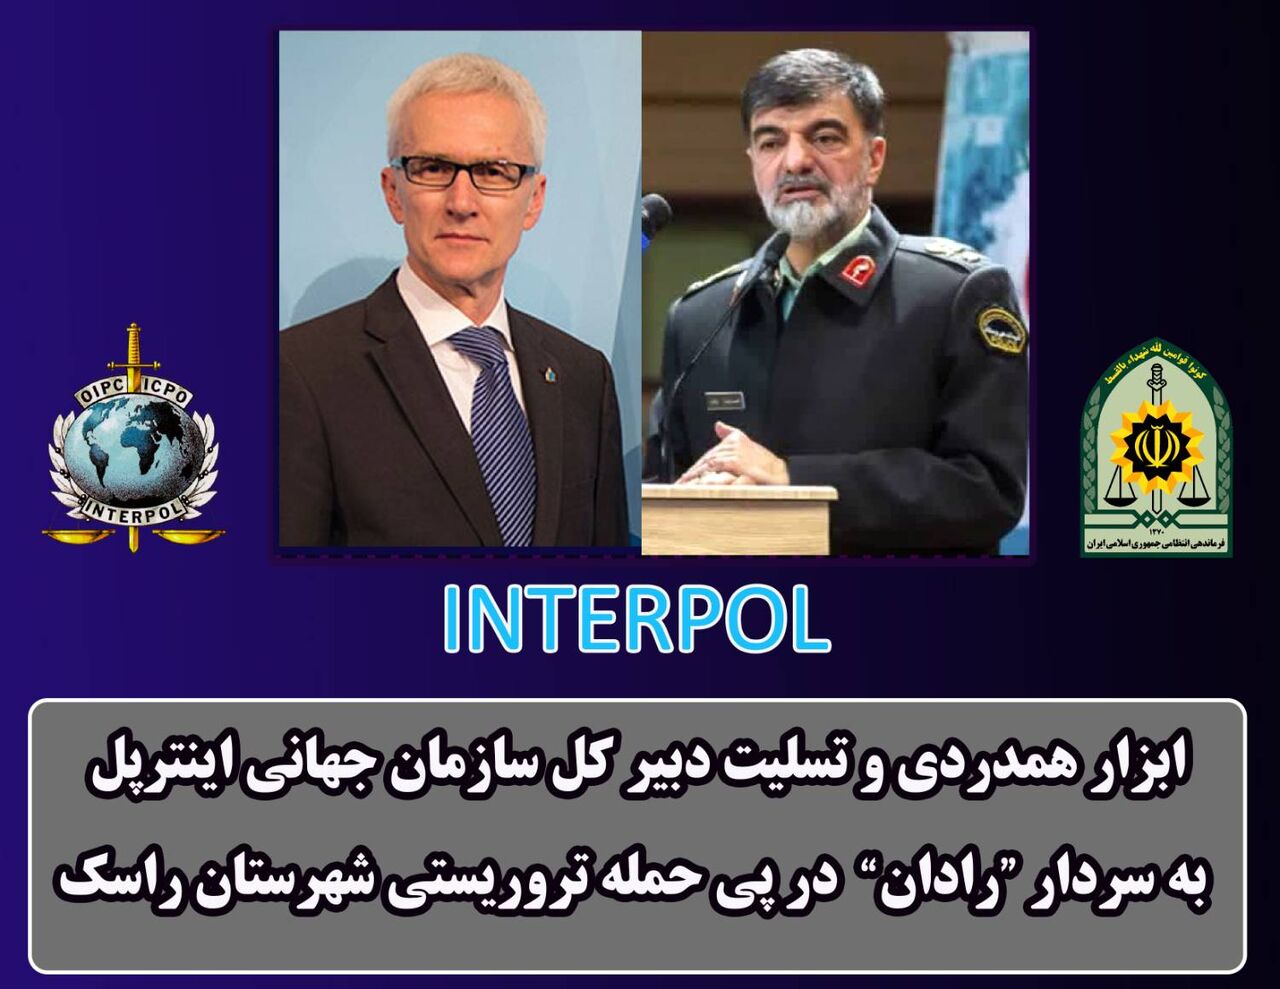 Генеральный секретарь международной полиции осудил теракт в иранском городе Раск